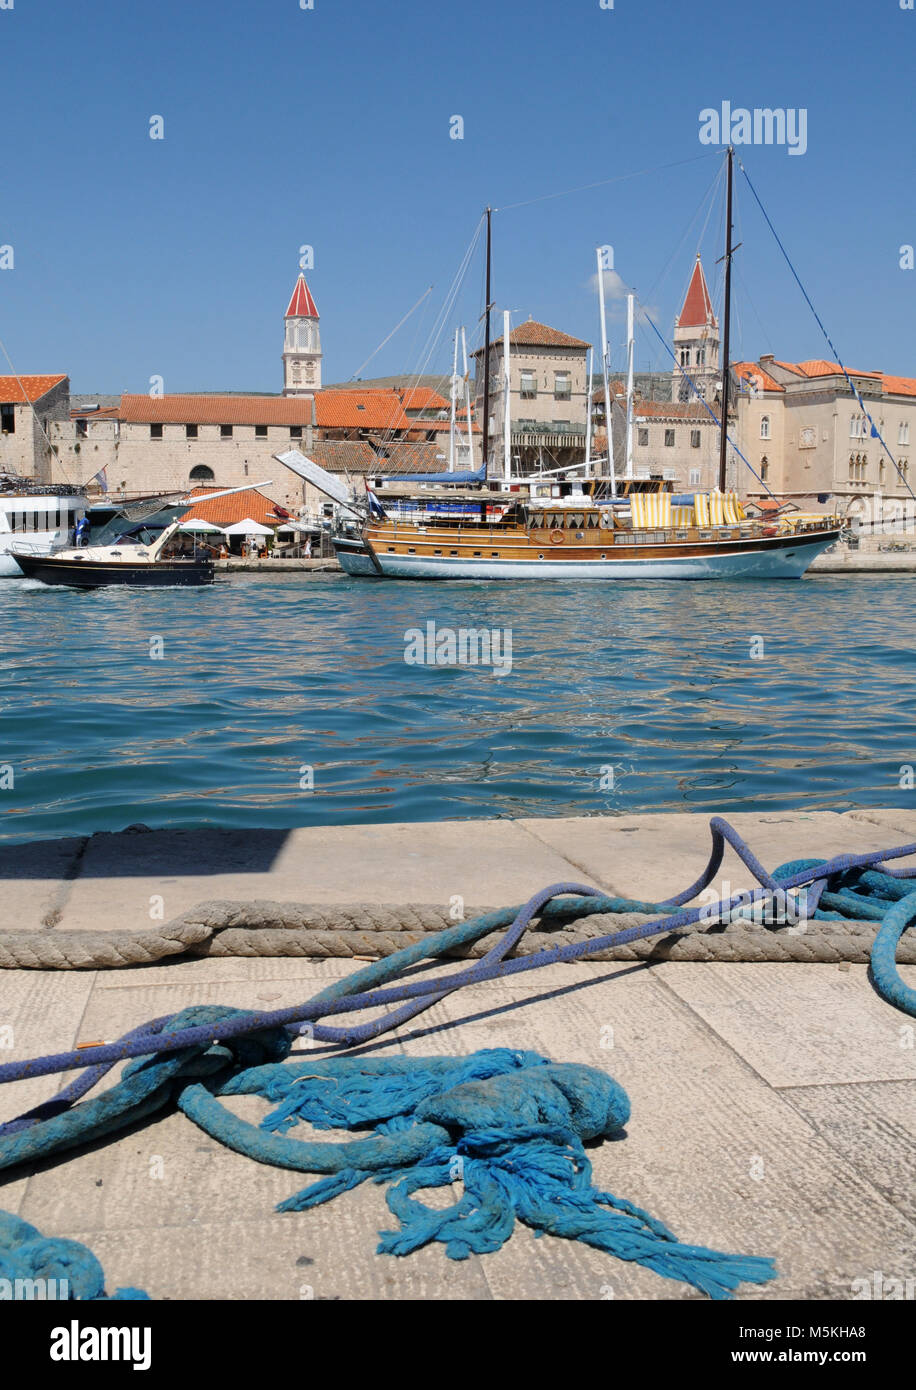 Trogir, Croatia. Sunny promenade along the pier of old Venetian town, Dalmatian Coast in Croatia. Stock Photo